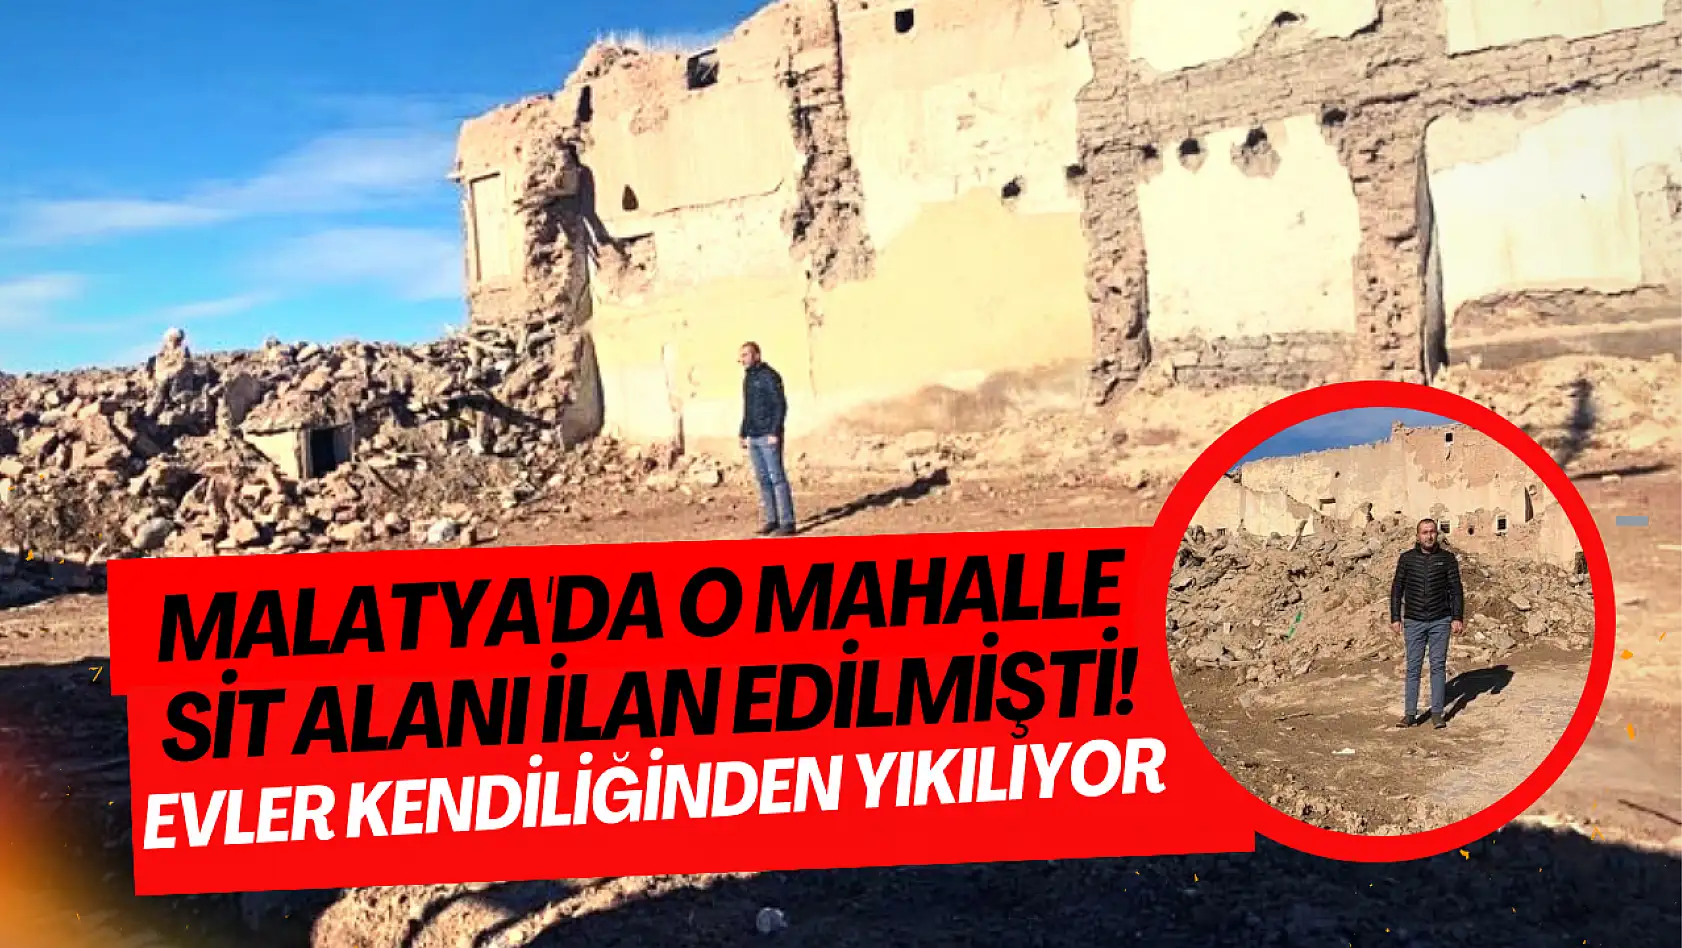 Malatya'da o mahalle sit alanı ilan edilmişti! Evler kendiliğinden yıkılıyor